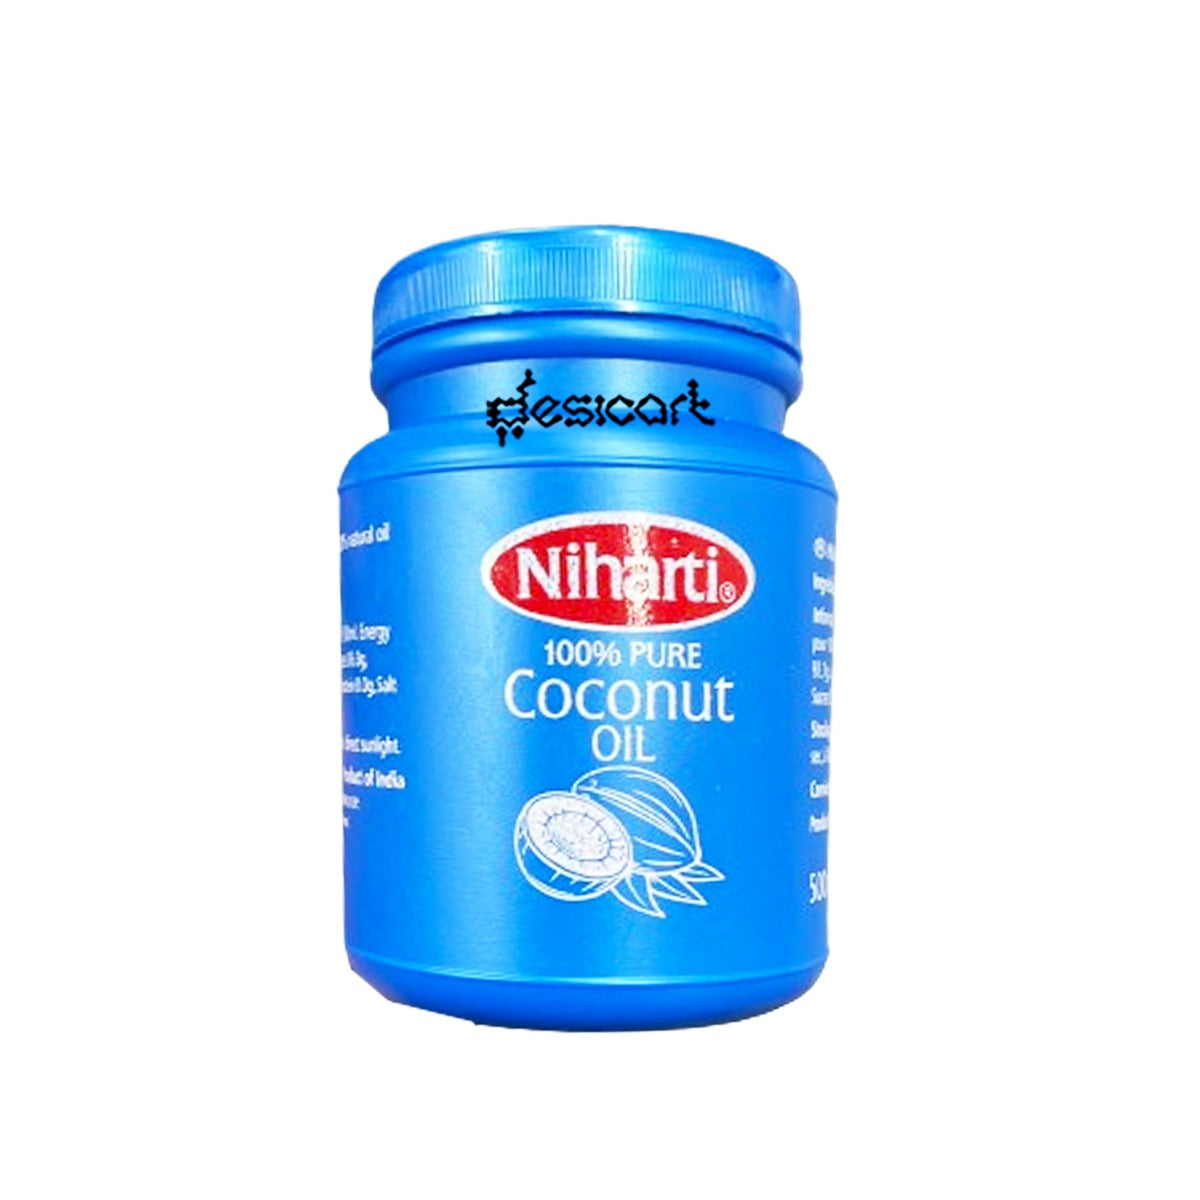 Niharti Coconut oil 500ml